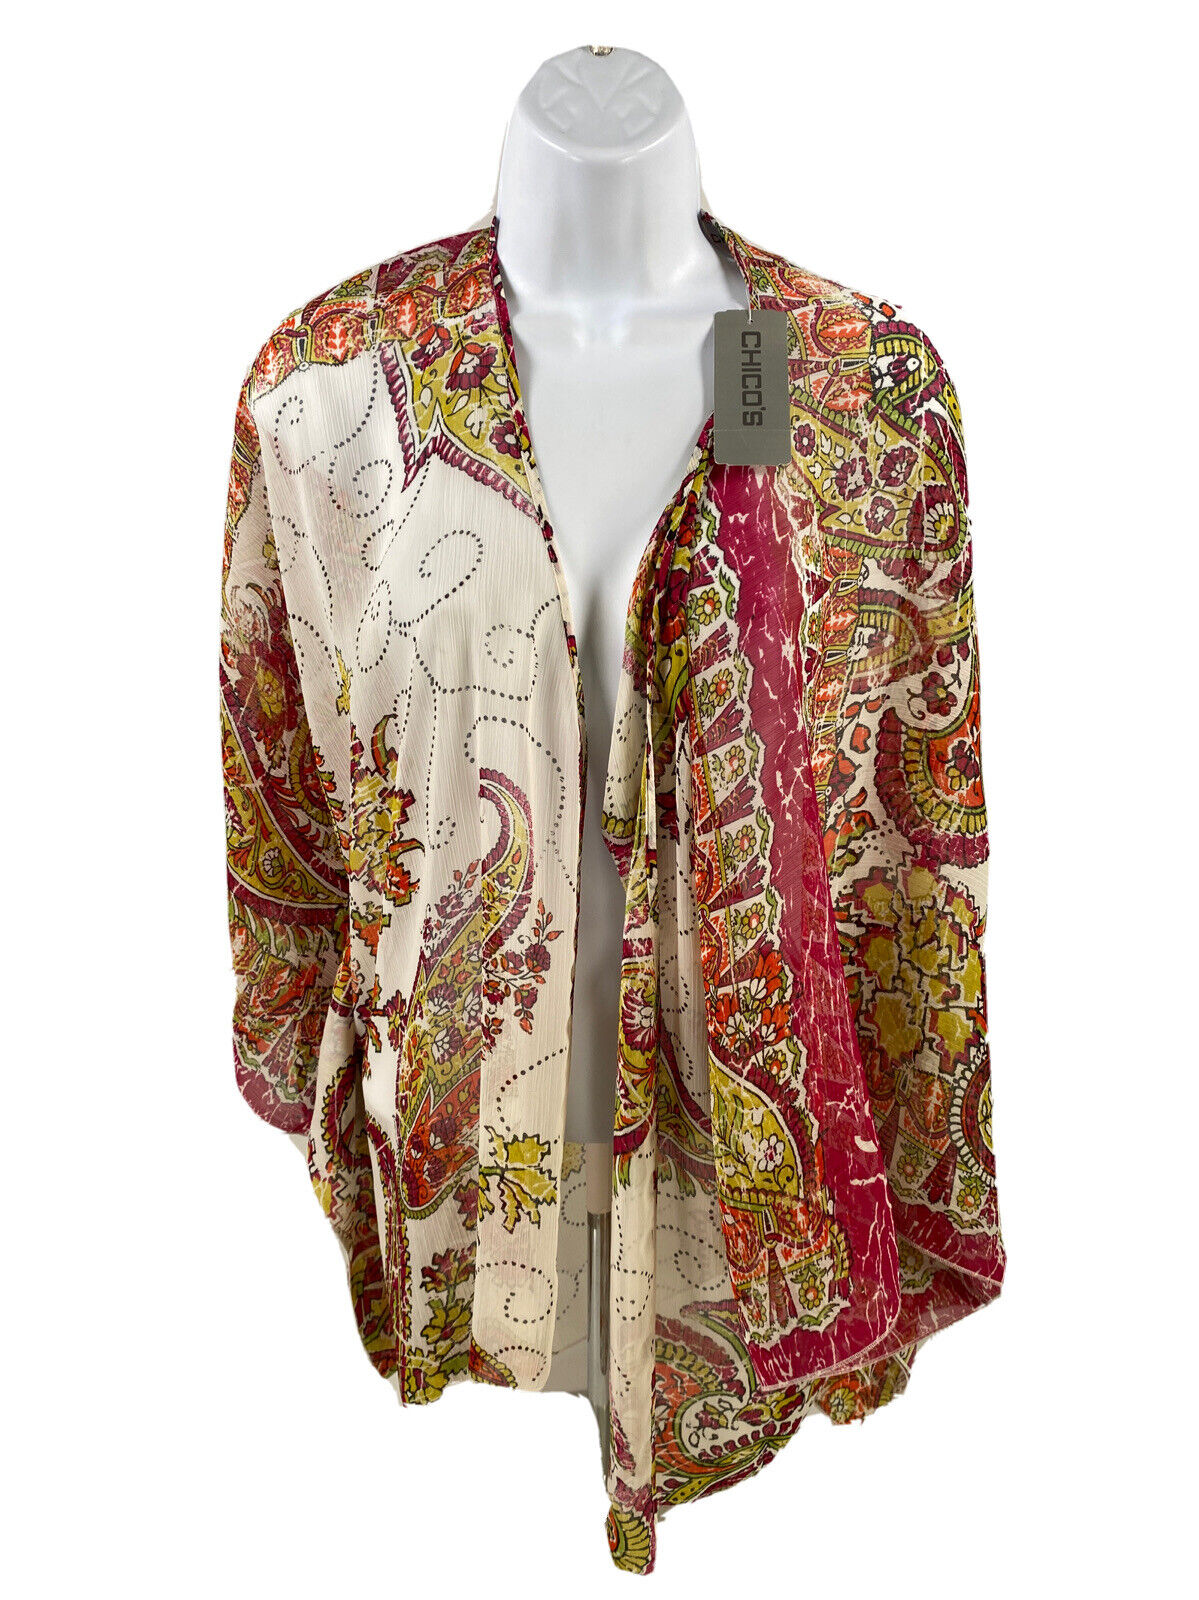 NEW Chico's Women's Multi-Color Sheer Kimono Wrap Top - 2/3 US L/XL